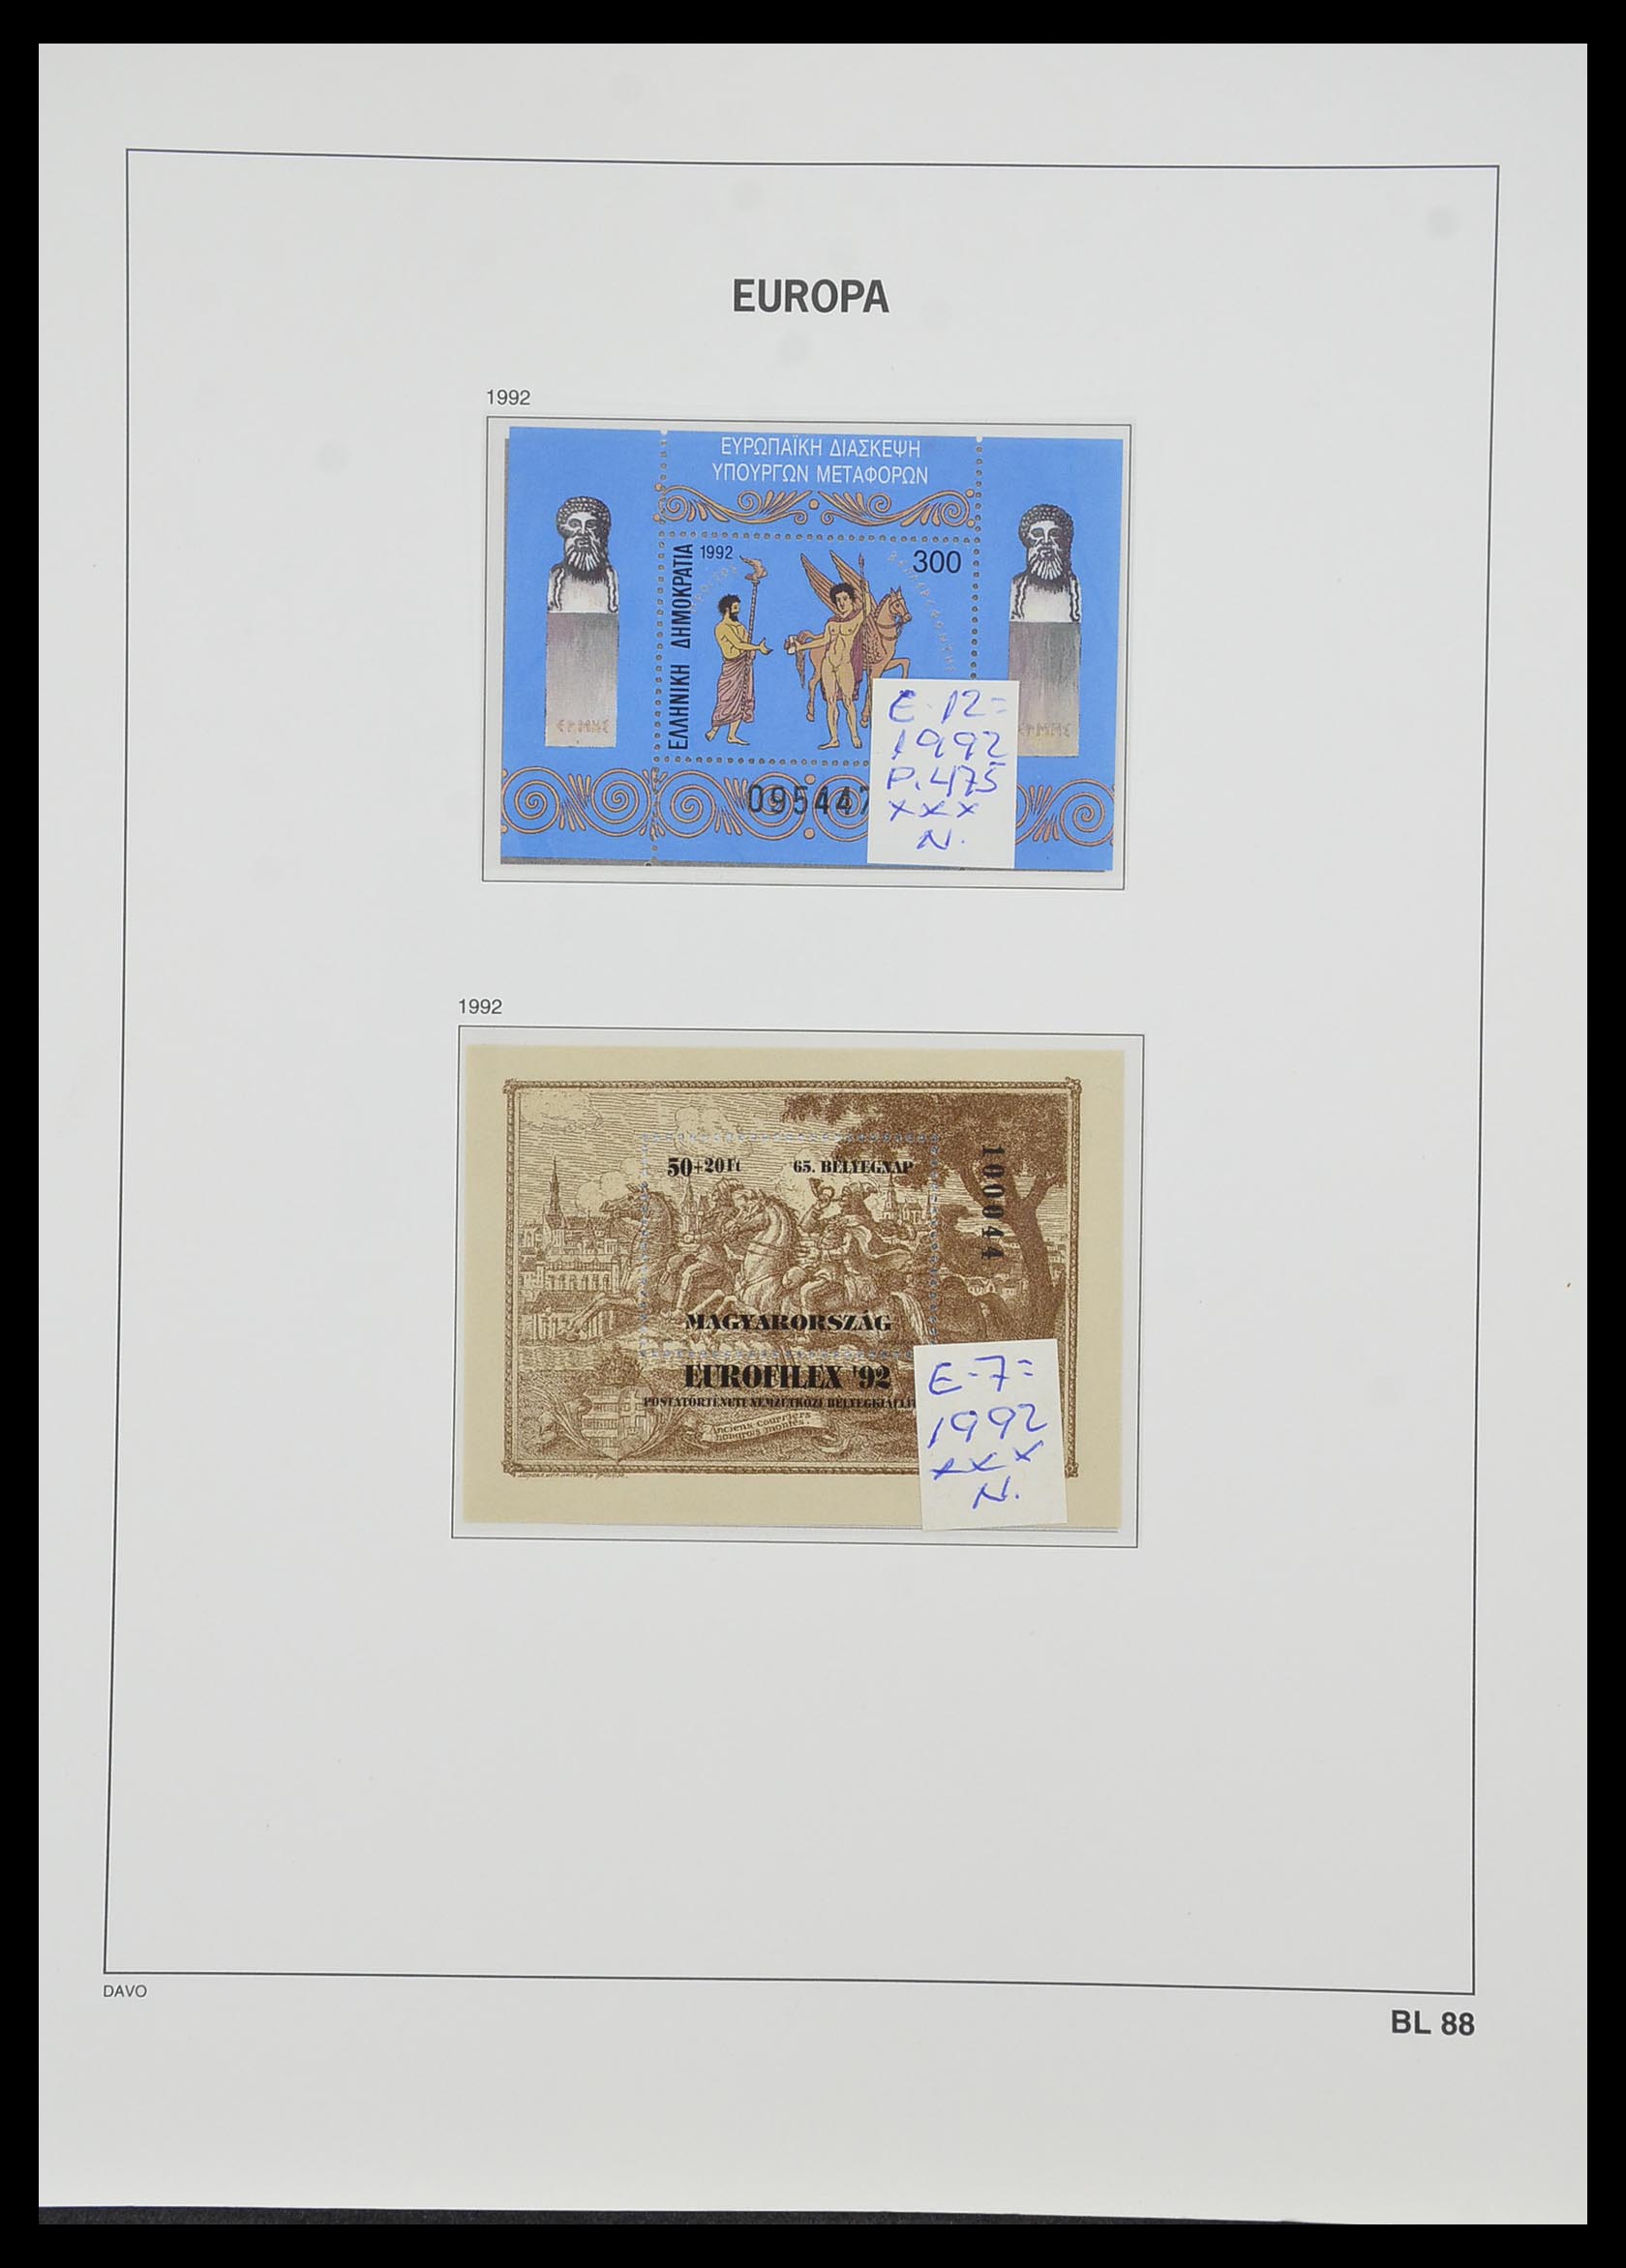 33985 076 - Stamp collection 33985 Europa CEPT souvenir sheets 1974-2014.